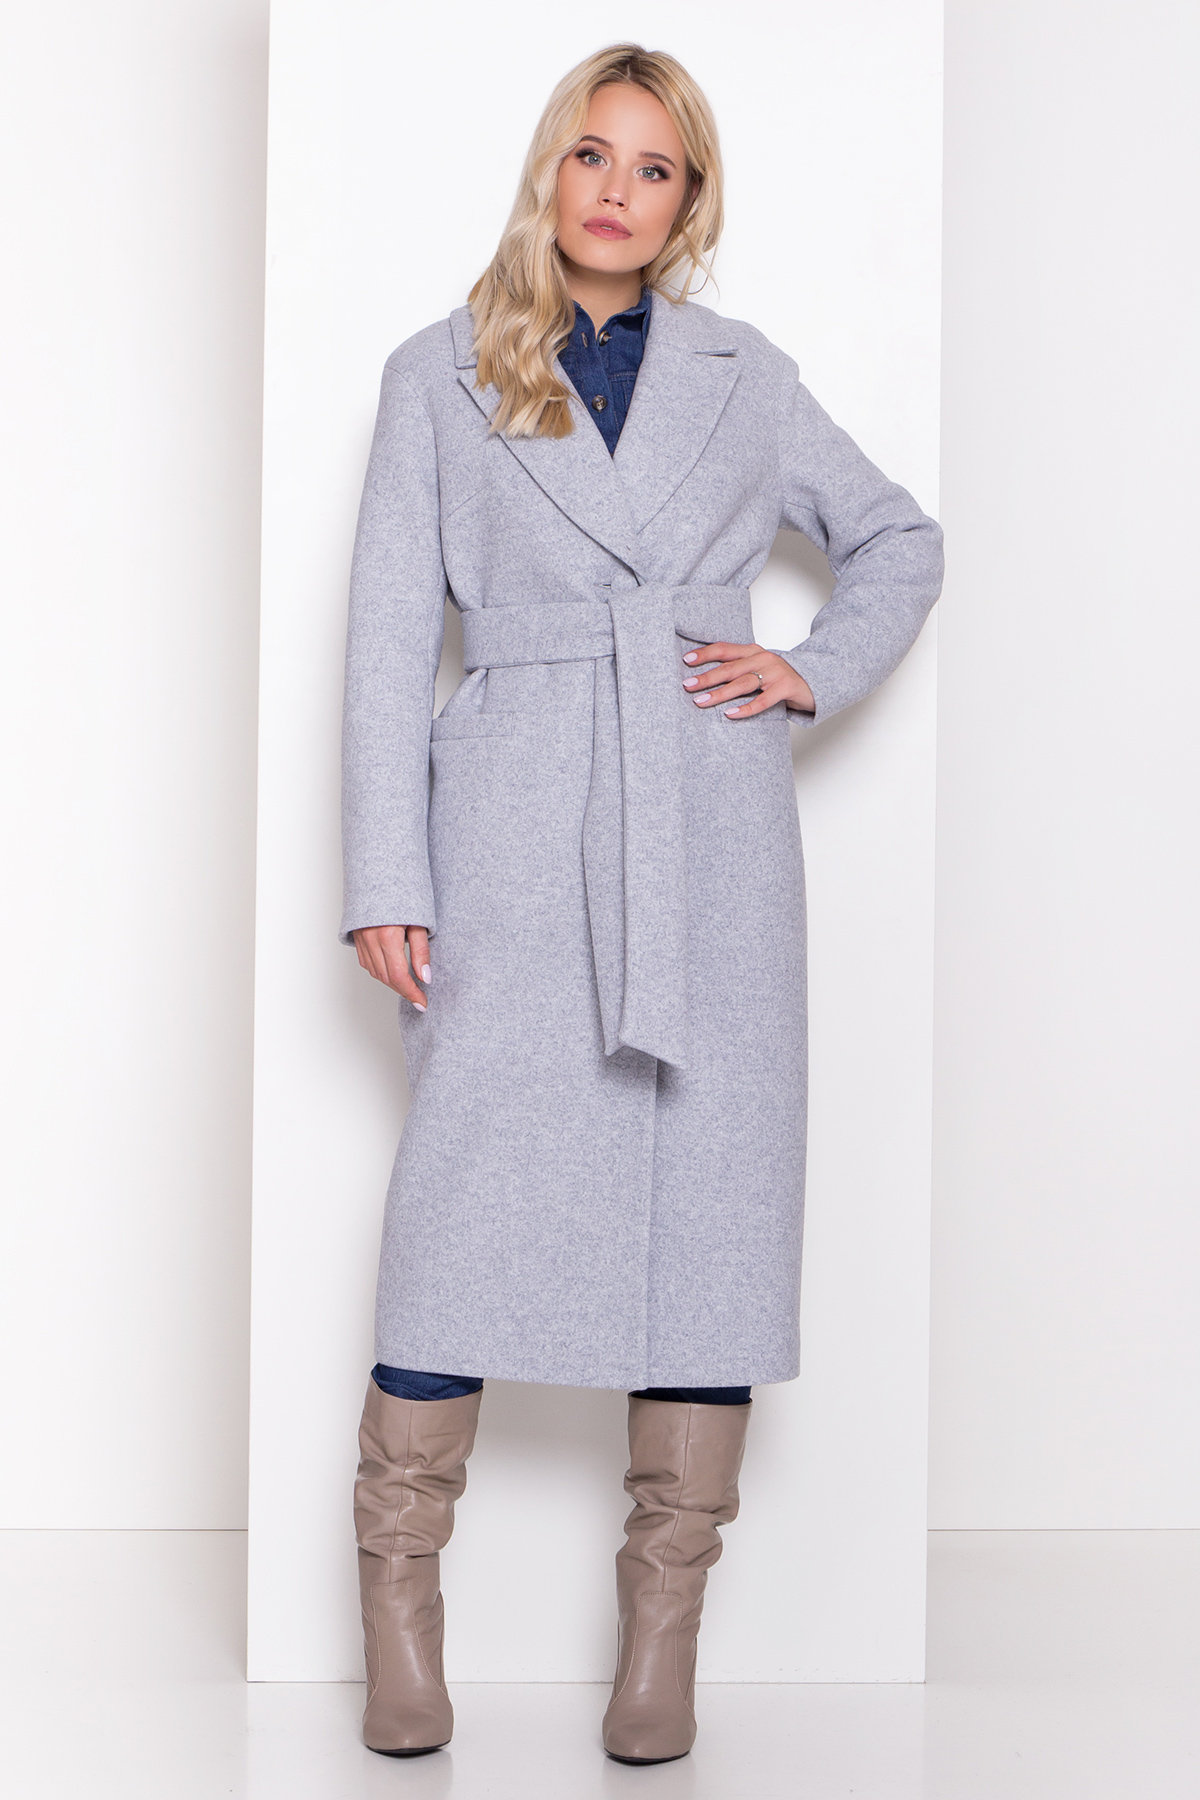 Пальто женское зимнее купить от Modus Длинное пальто зима Вива макси 8345